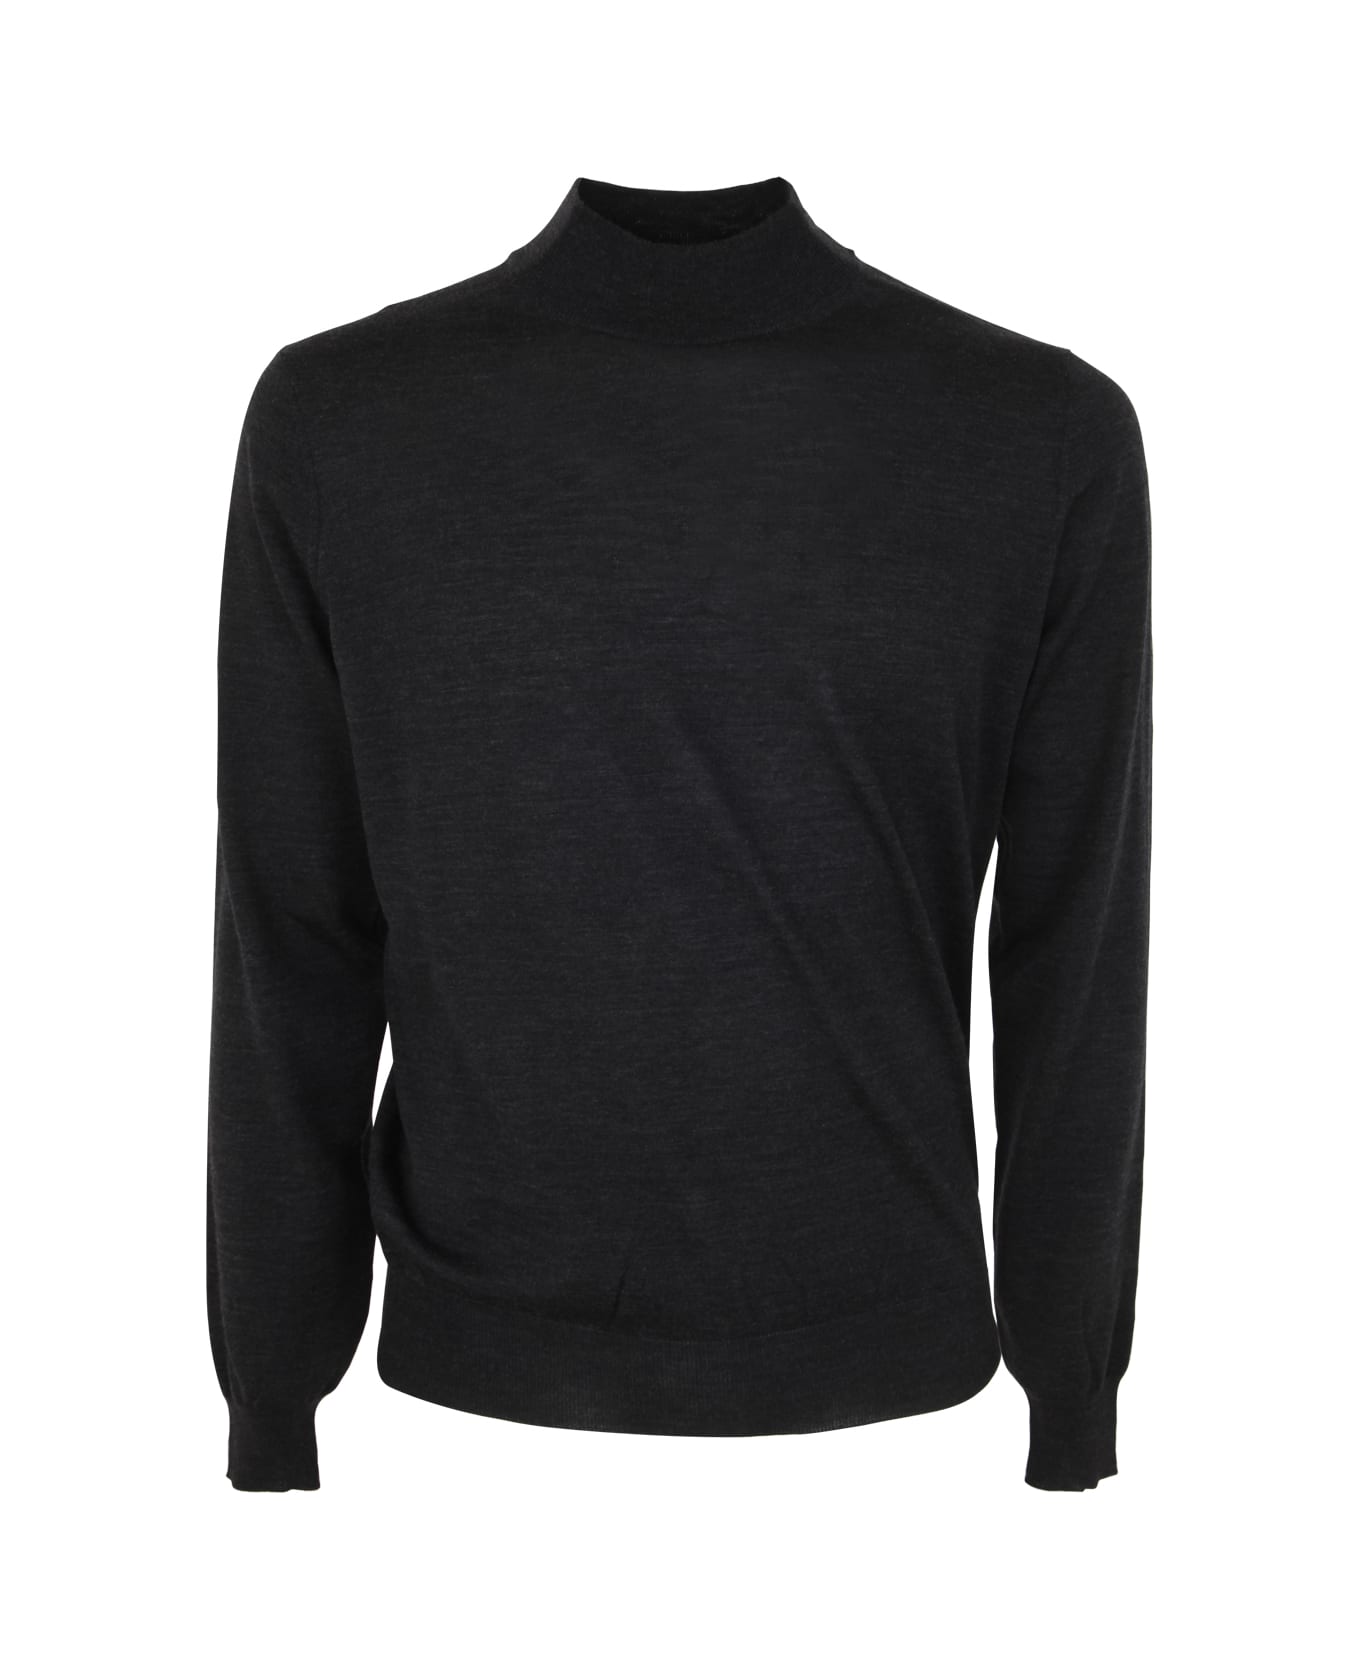 Filippo De Laurentiis Royal Merino Long Sleeves High Neck Sweater - Anthracite